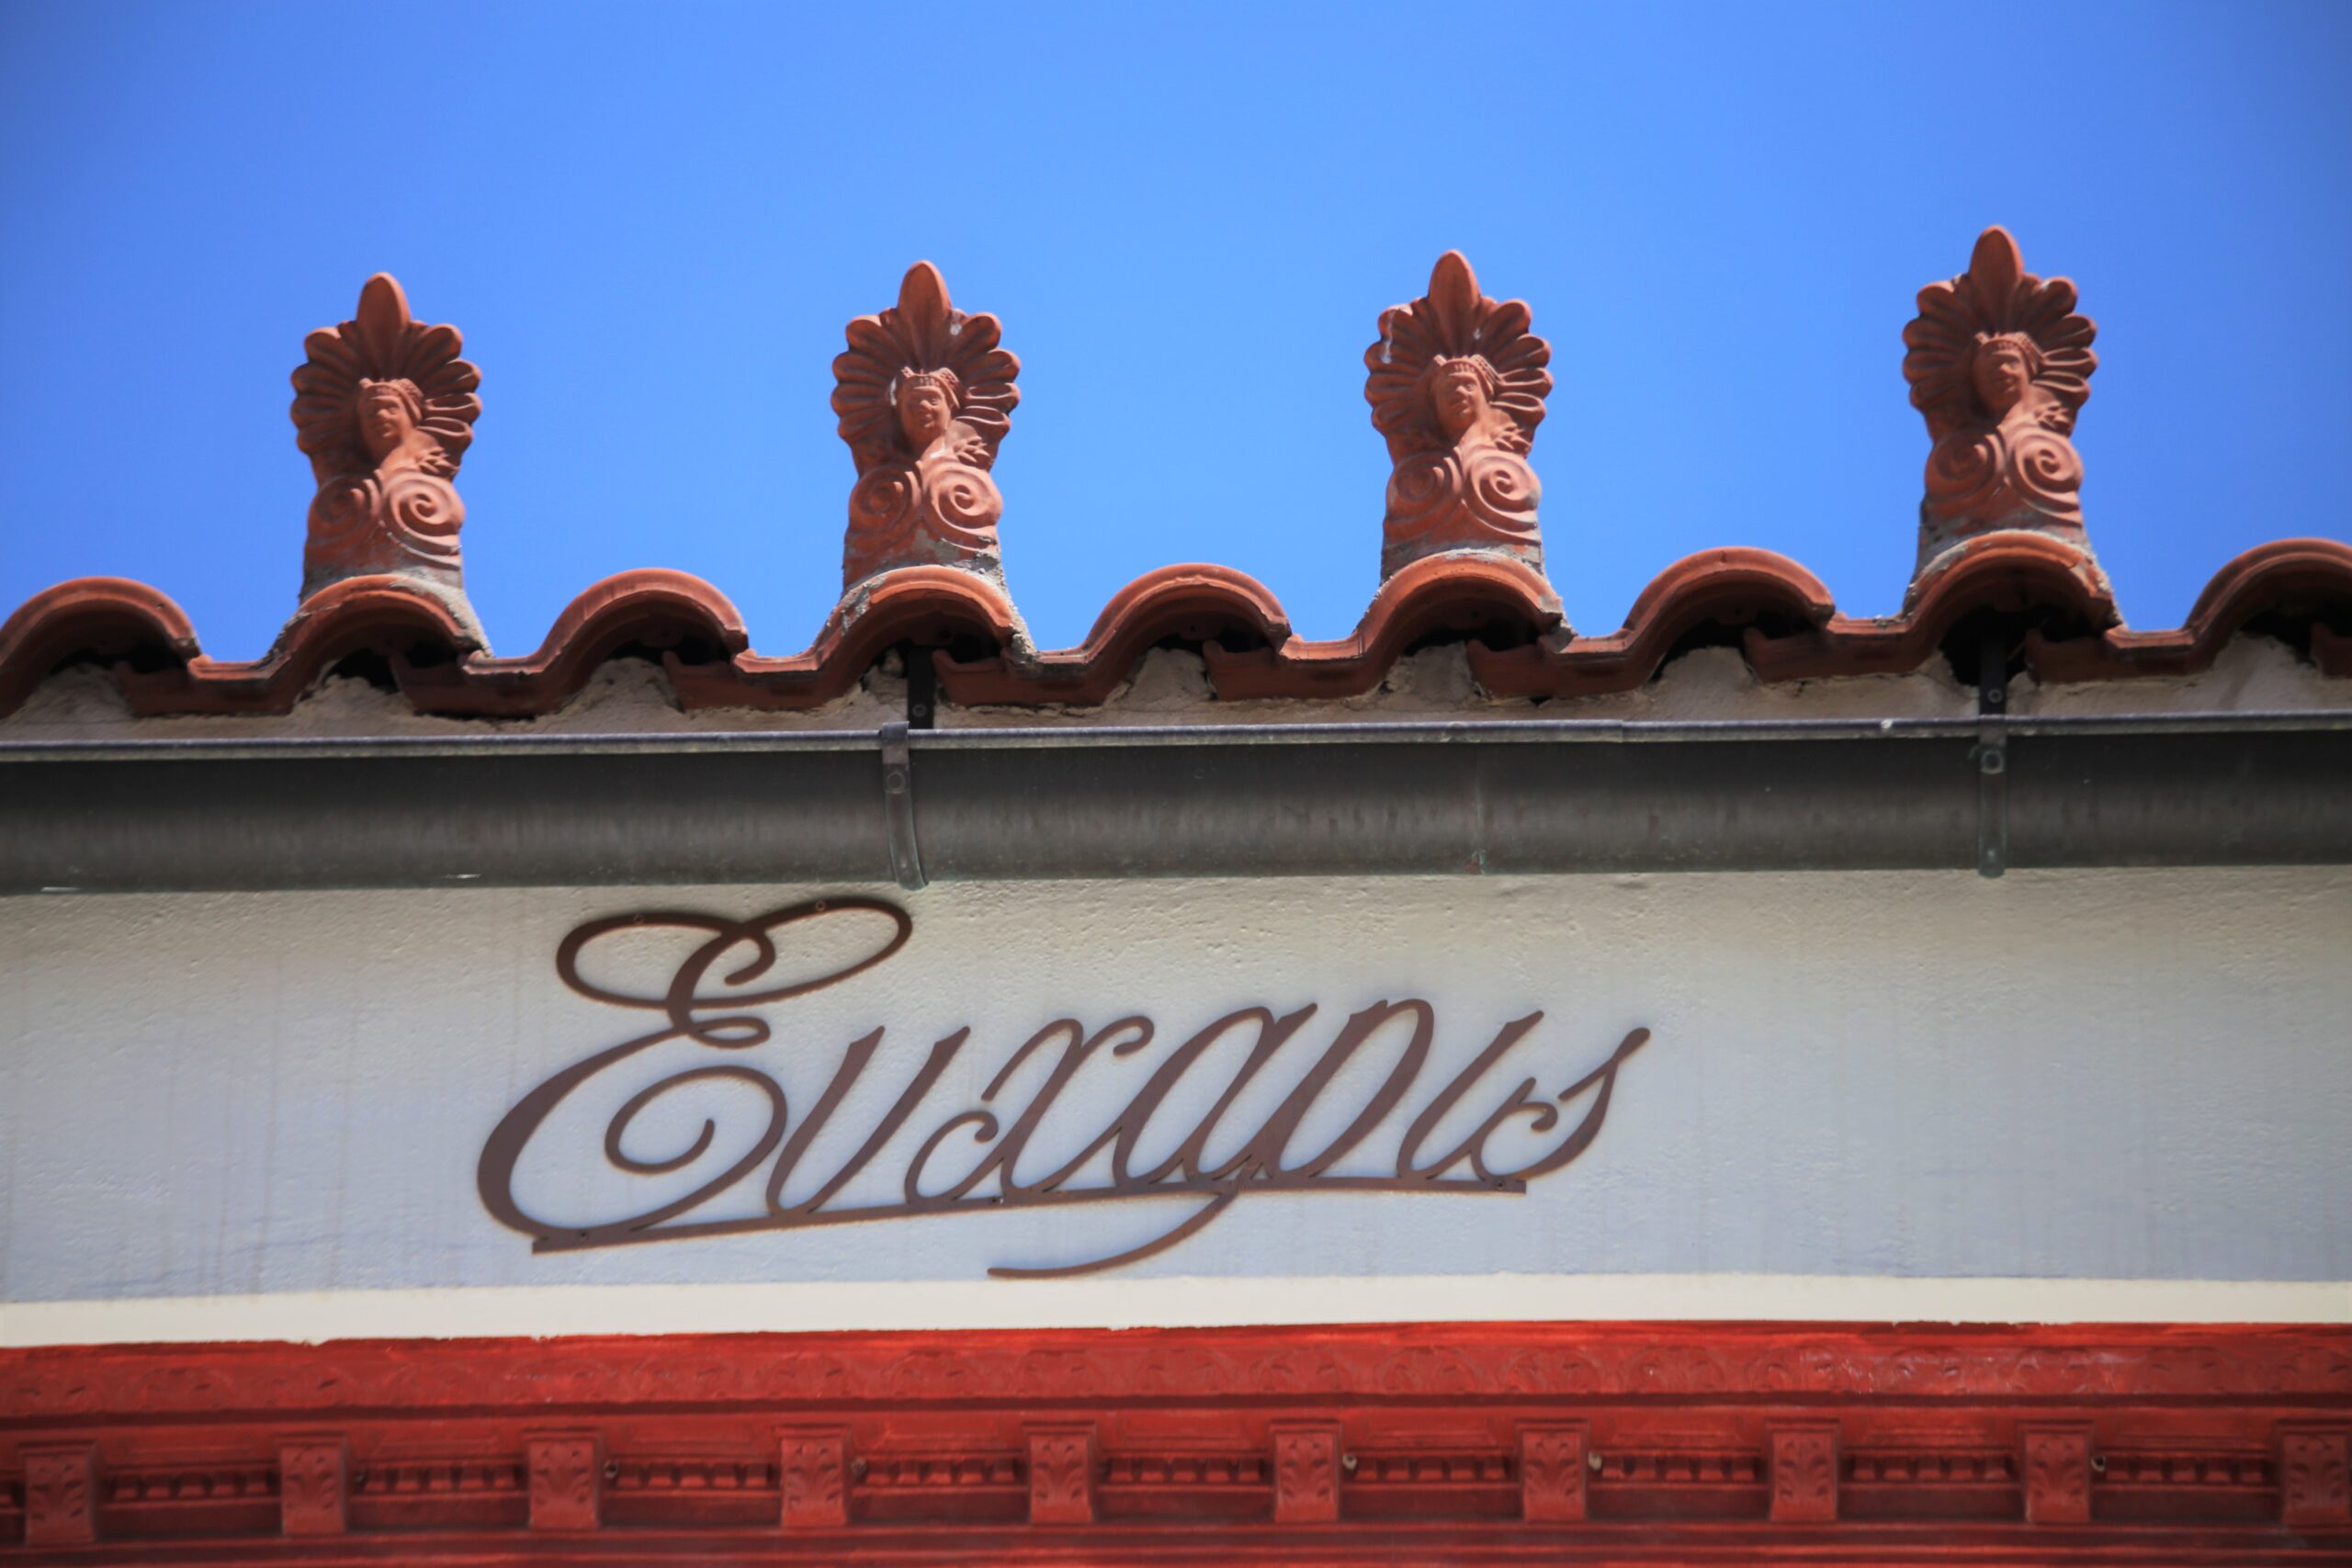 Eycharis Restaurant